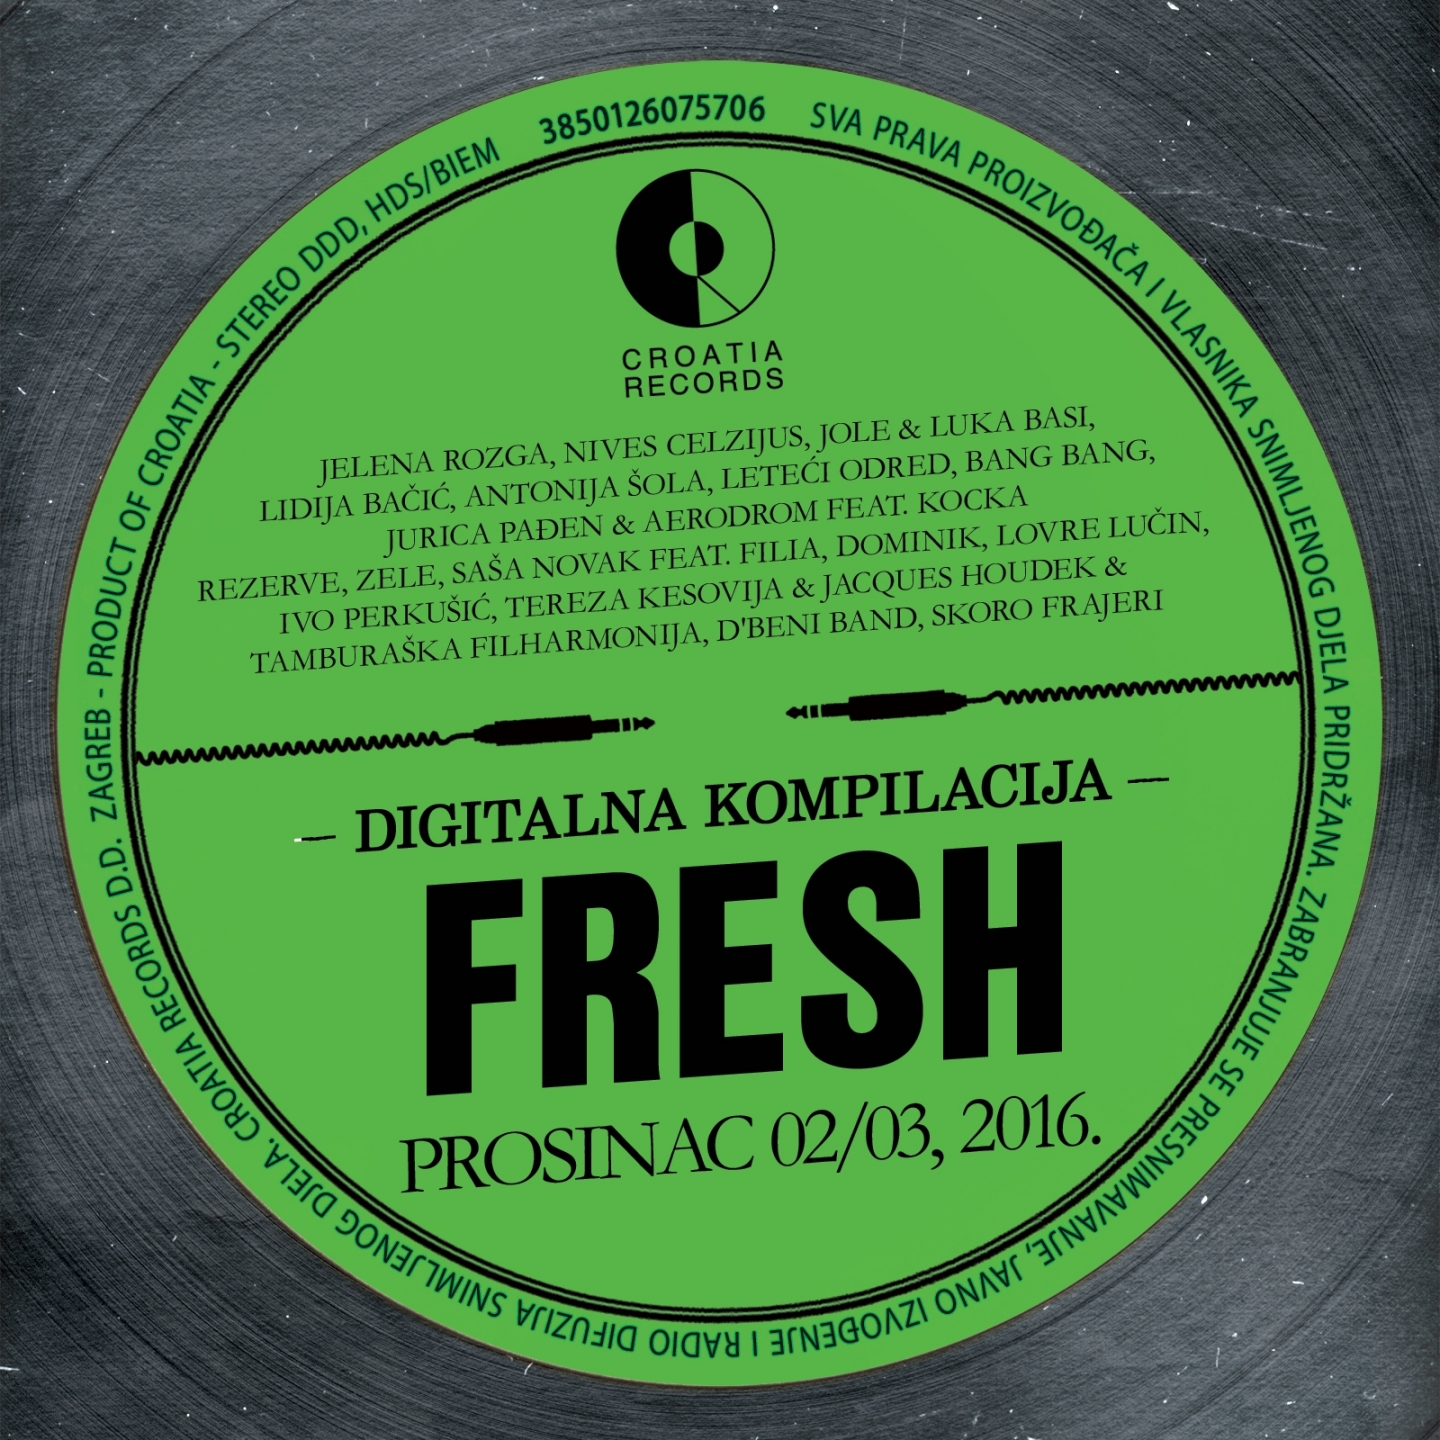 Fresh Prosinac, 2016. 02/03